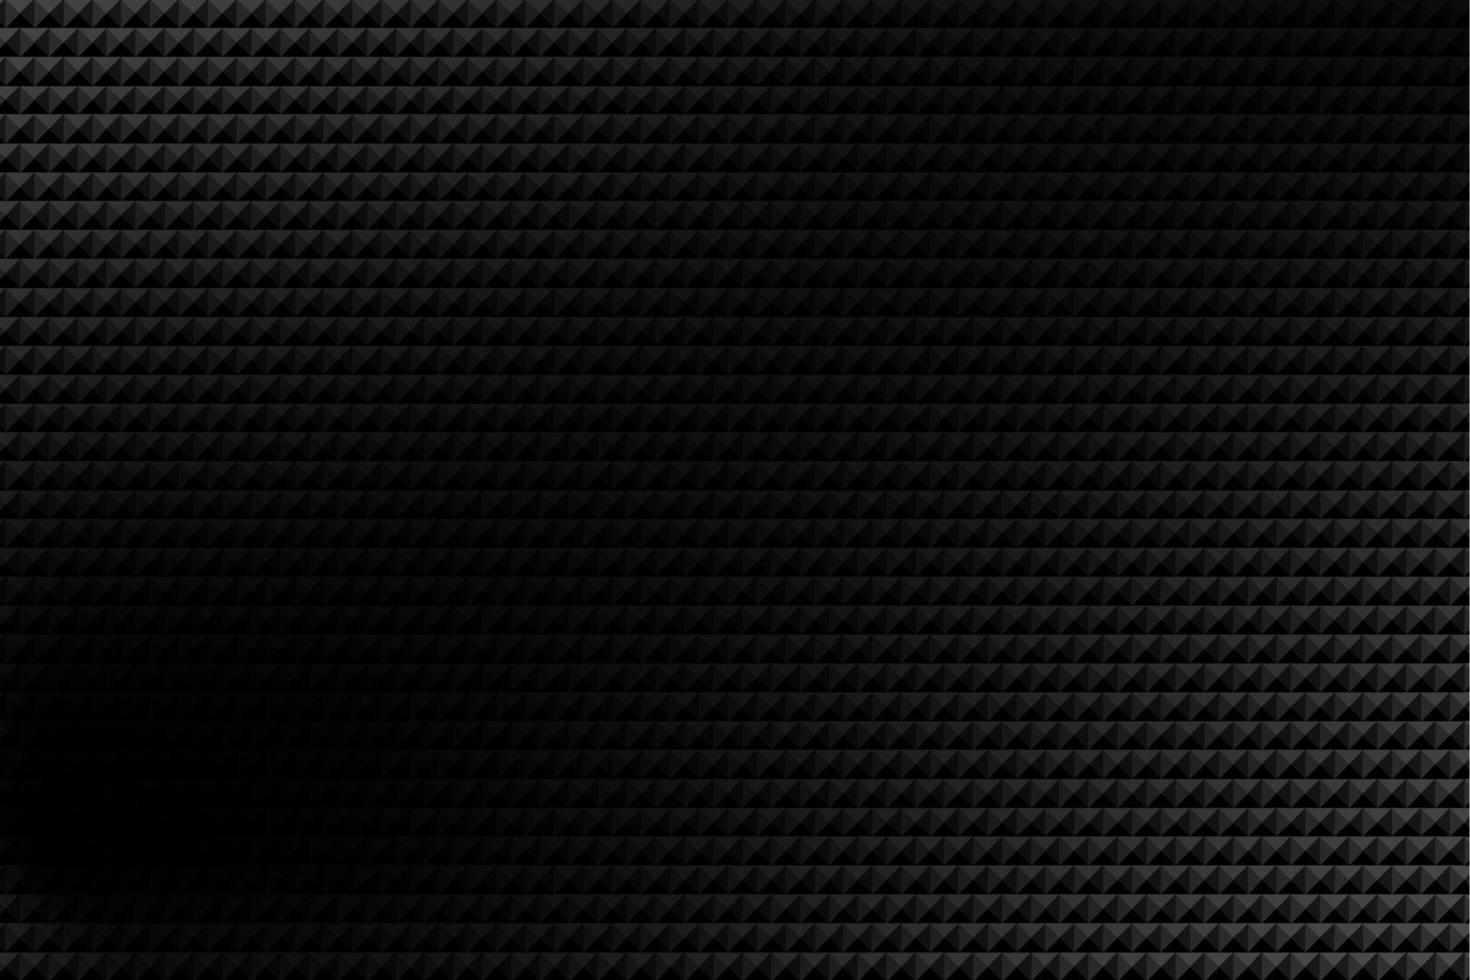 schwarzgrundiges ziegelmuster weiße linien bilden quadrate der stoff bildet eine wand vektor